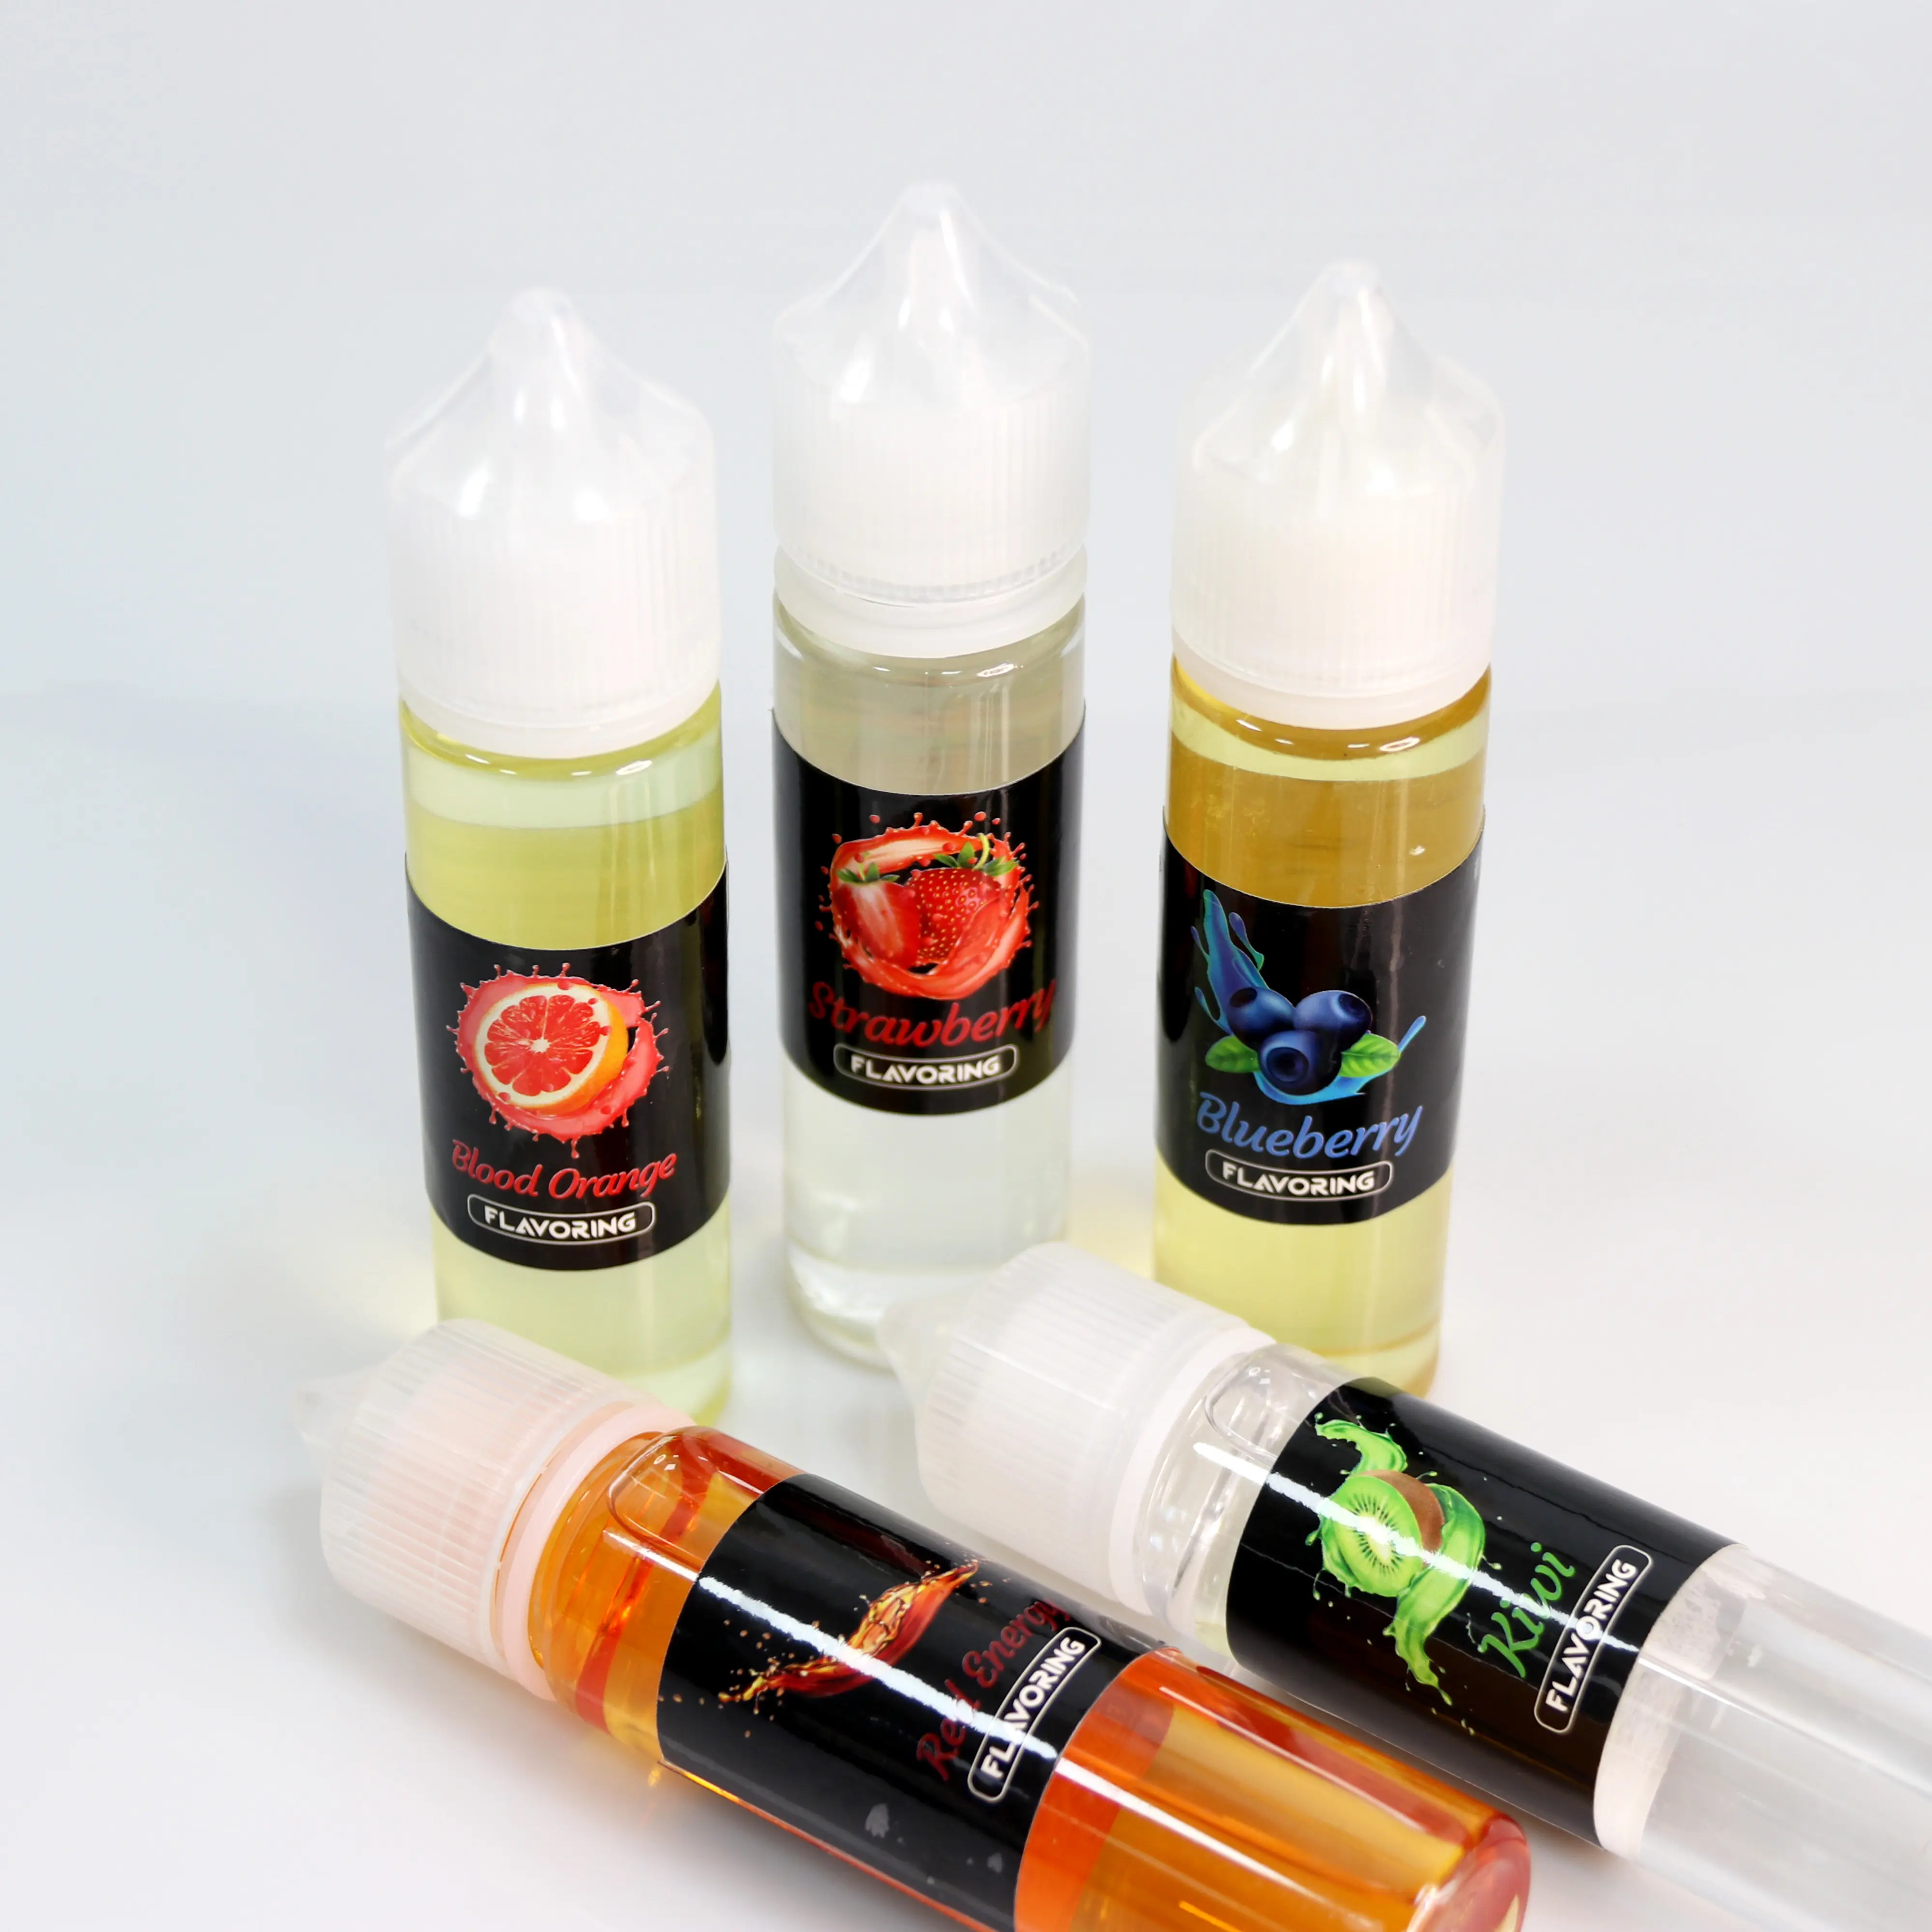 Commercio all'ingrosso personalizzato aromi concentrati aromi commestibili per tabacco sigaretta cibo bevanda